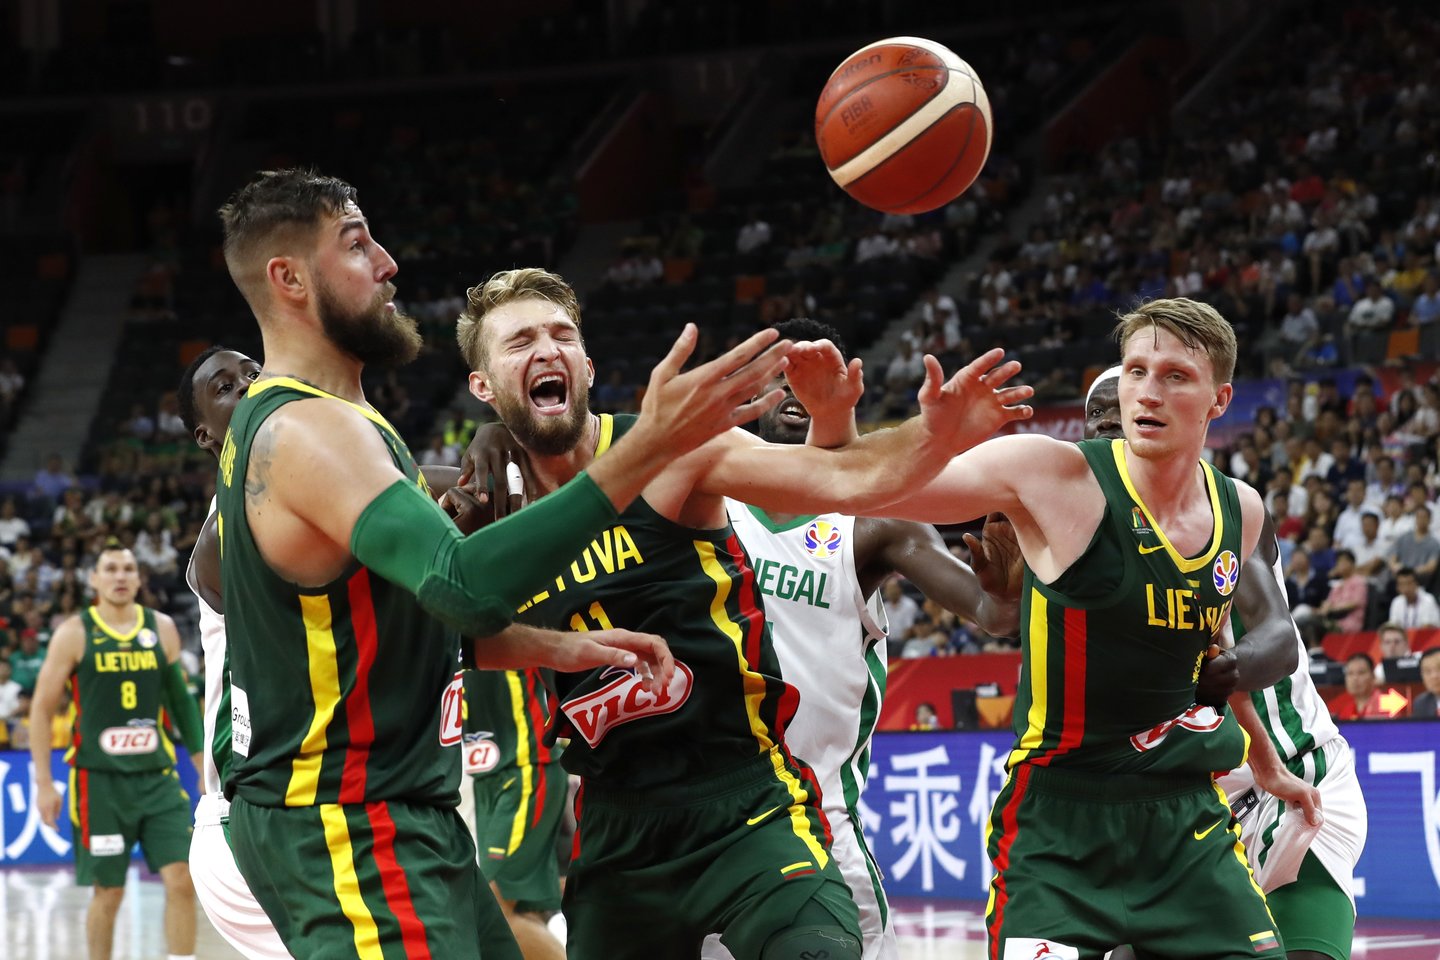 Dvejomis triuškinamomis pergalėmis pasaulio čempionatą pradėjusi Lietuvos rinktinė neįveikė antrojo etapo ir bendroje rikiuotėje liko devinta.<br>Reuters/Scanpix nuotr.